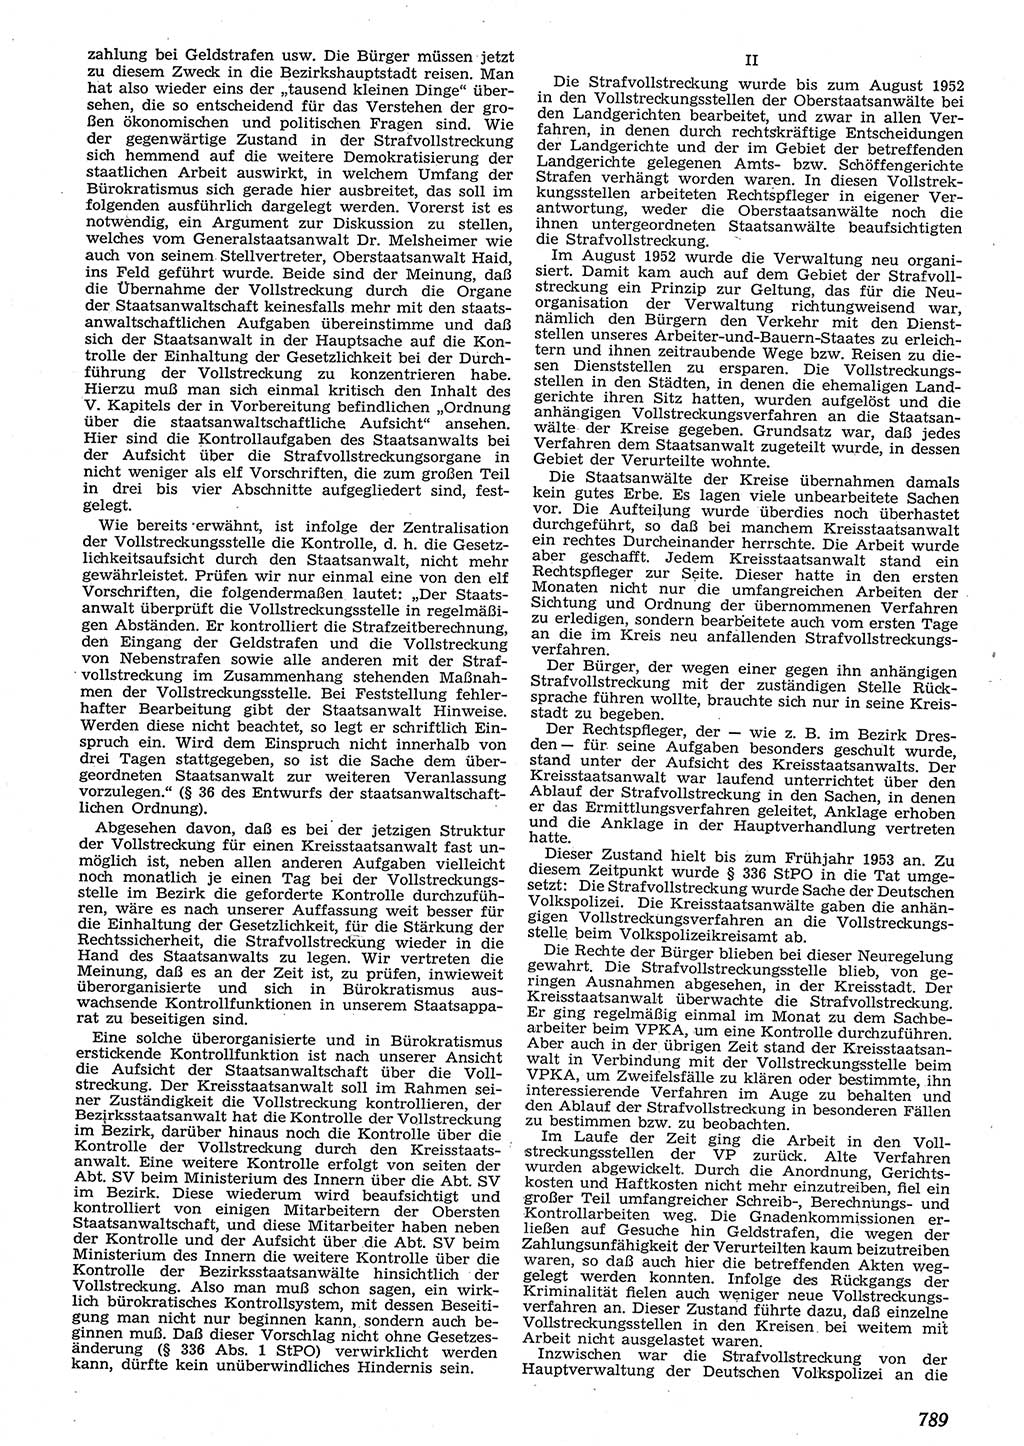 Neue Justiz (NJ), Zeitschrift für Recht und Rechtswissenschaft [Deutsche Demokratische Republik (DDR)], 10. Jahrgang 1956, Seite 789 (NJ DDR 1956, S. 789)